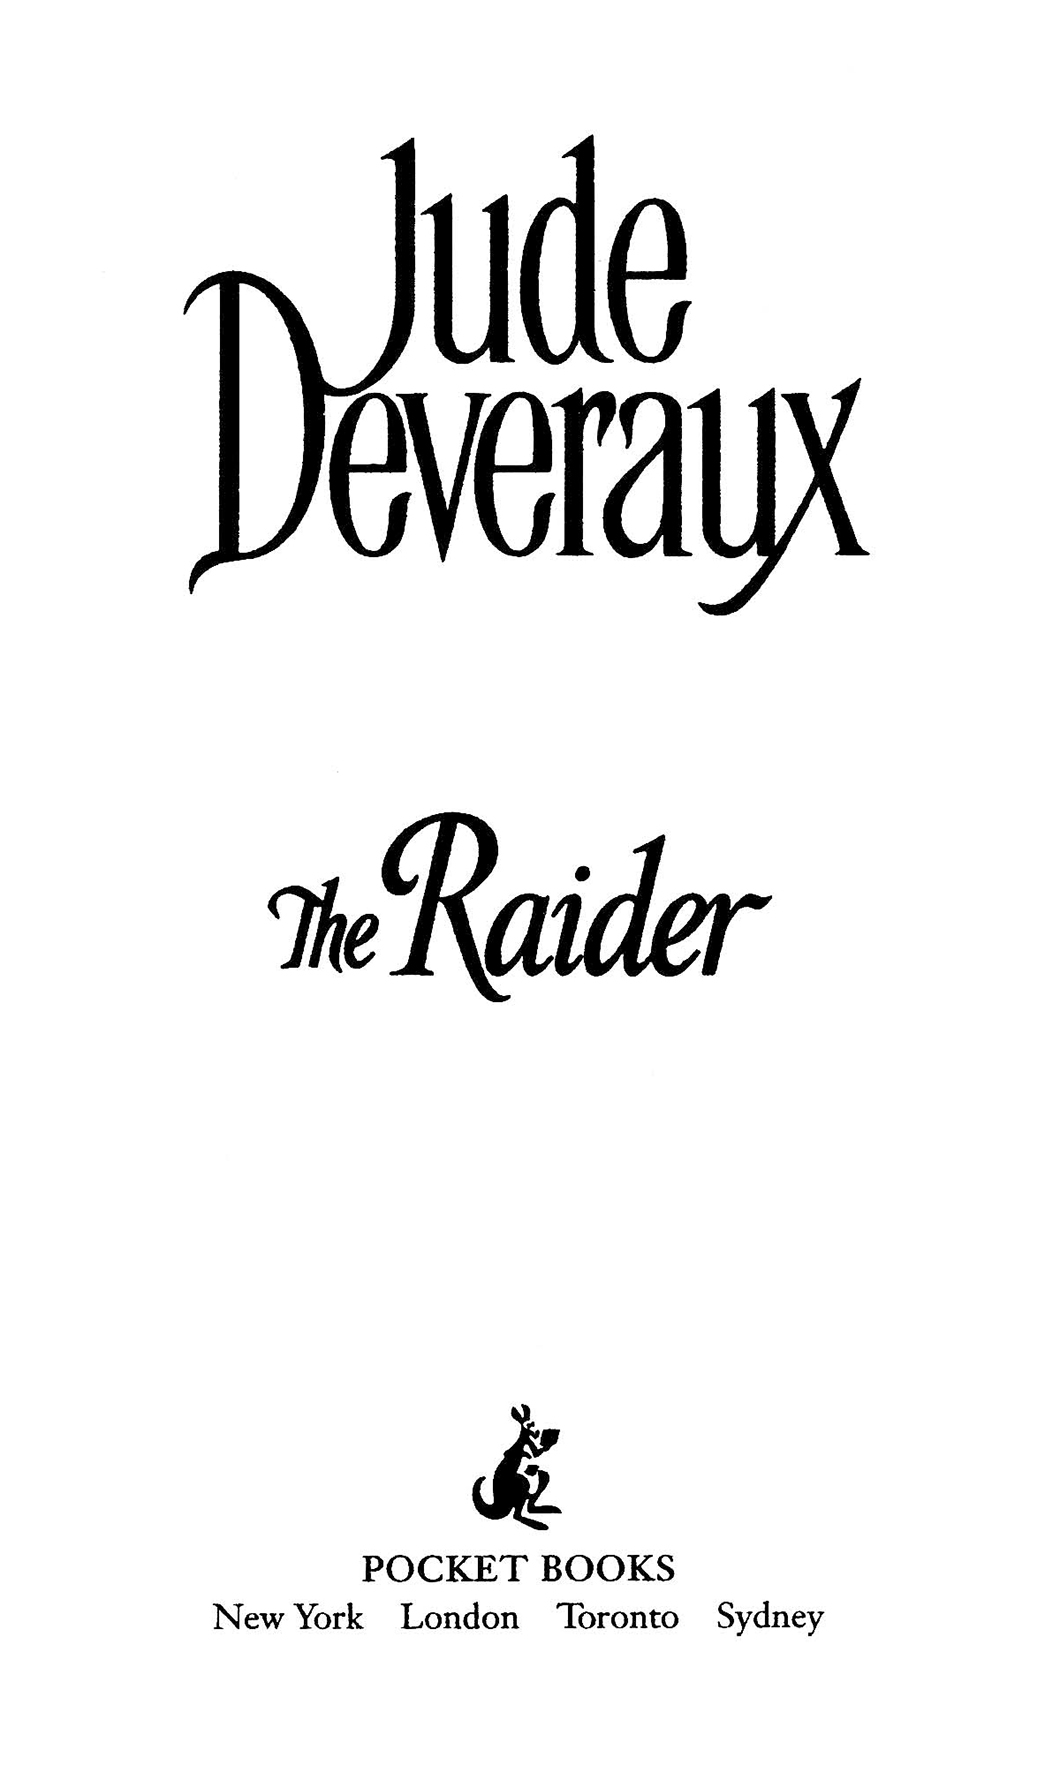 The Raider by Jude Deveraux